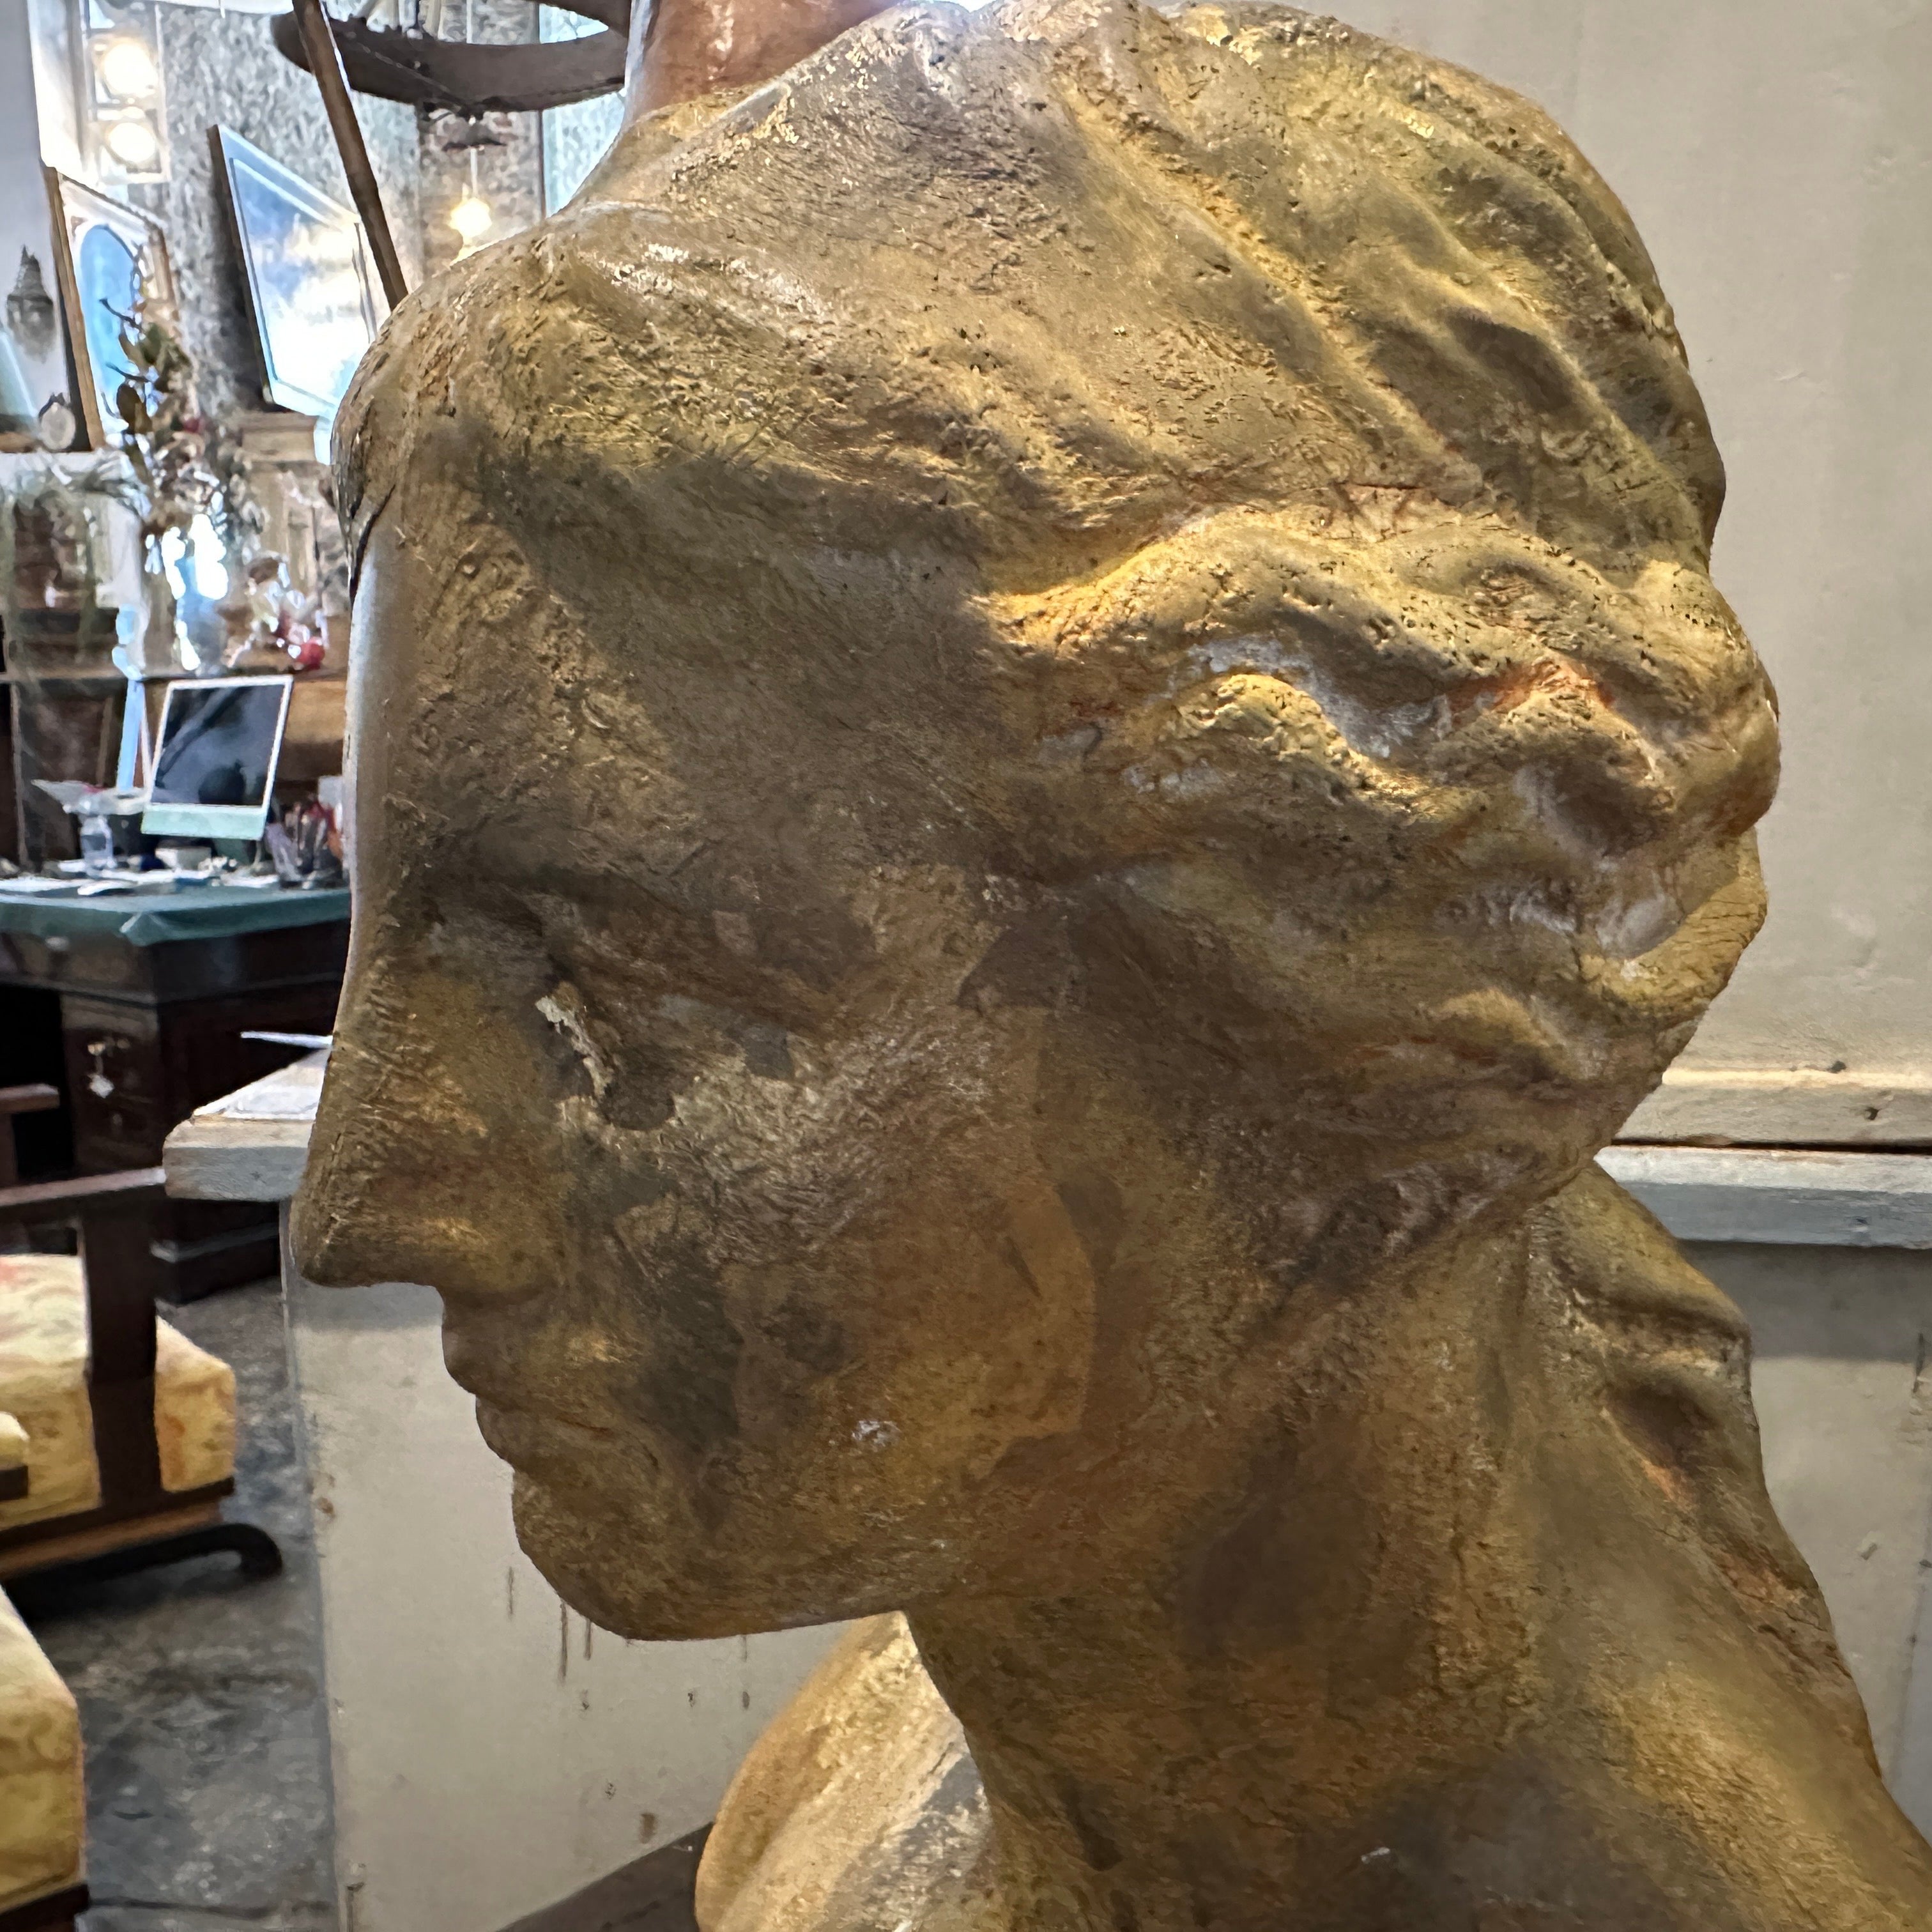 Ce buste exquis capture l'essence de l'esthétique néoclassique, avec un rendu méticuleux de la beauté intemporelle de la Vener di Milo (Vénus de Milo), célèbre statue de la Grèce antique. Il provenait d'une Diptych Fine Arts dans une académie